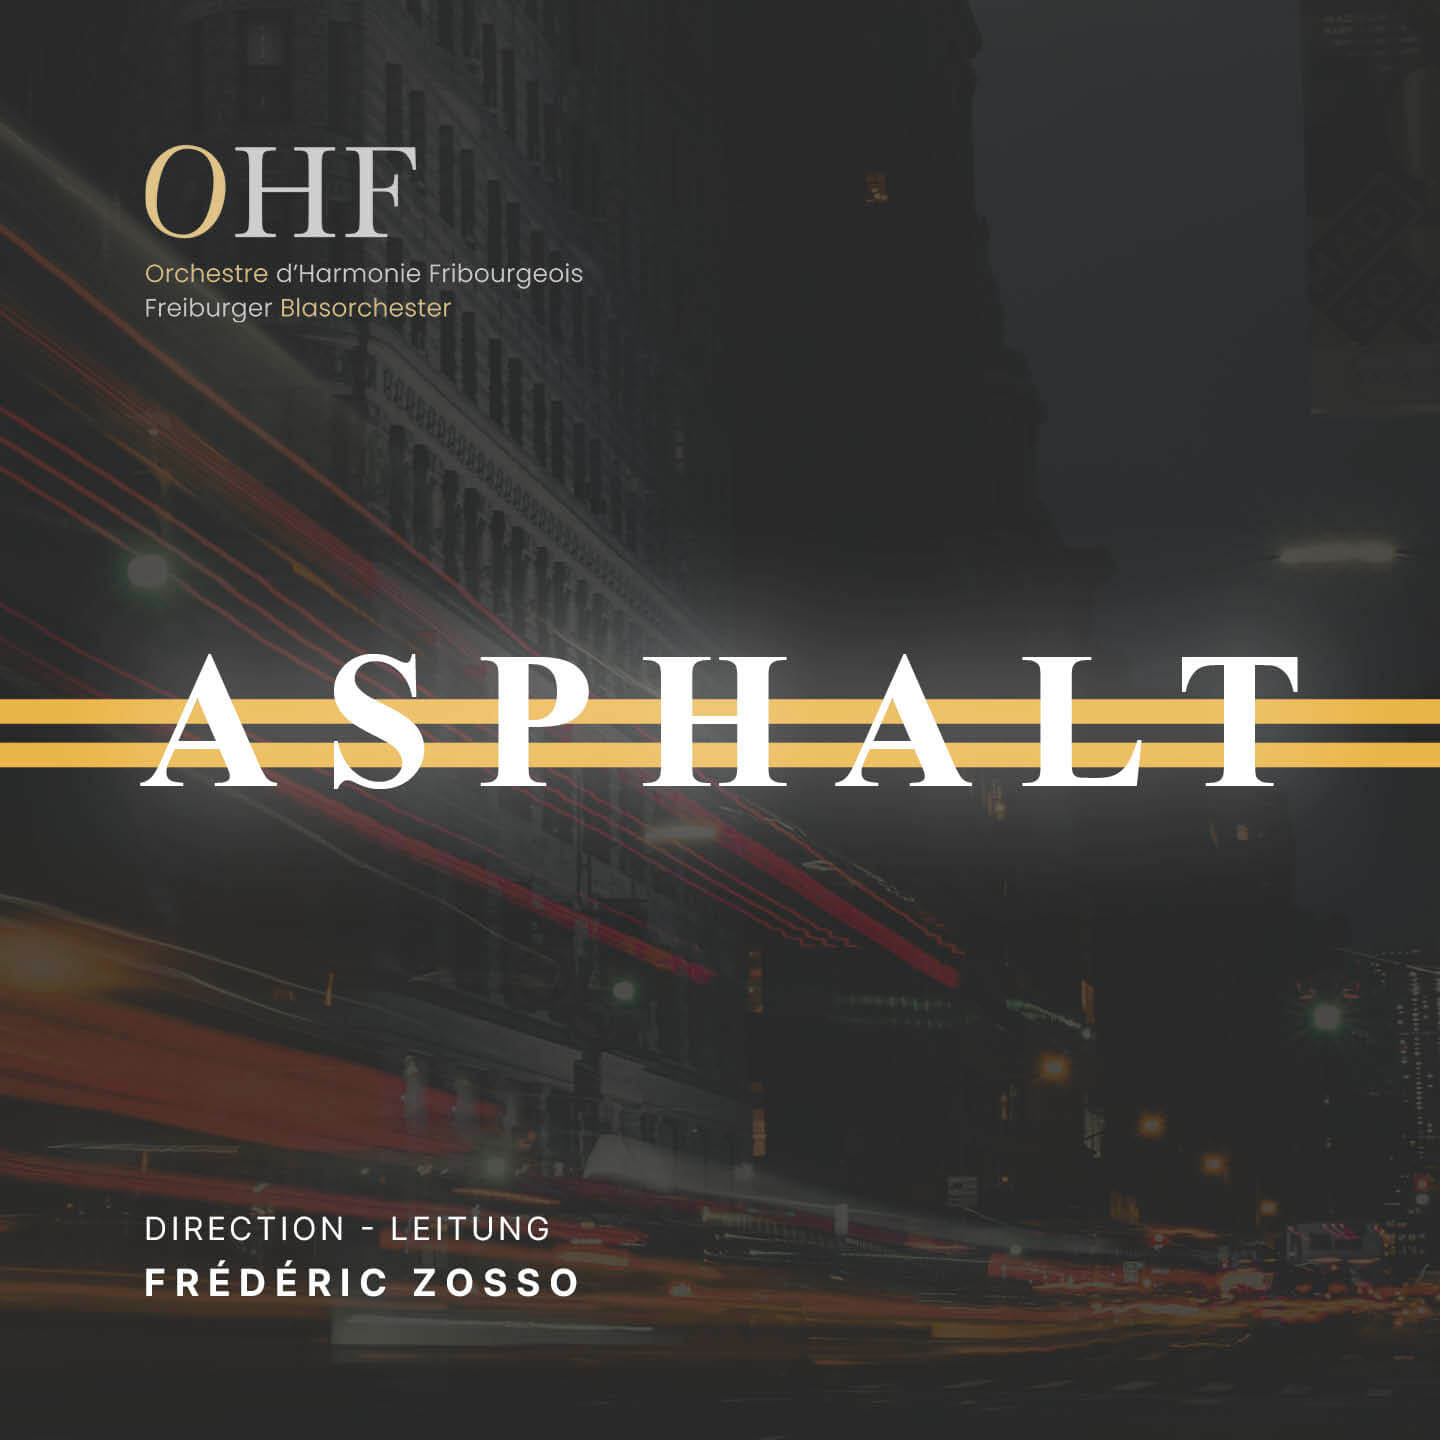 Couverture de l'album Asphalt